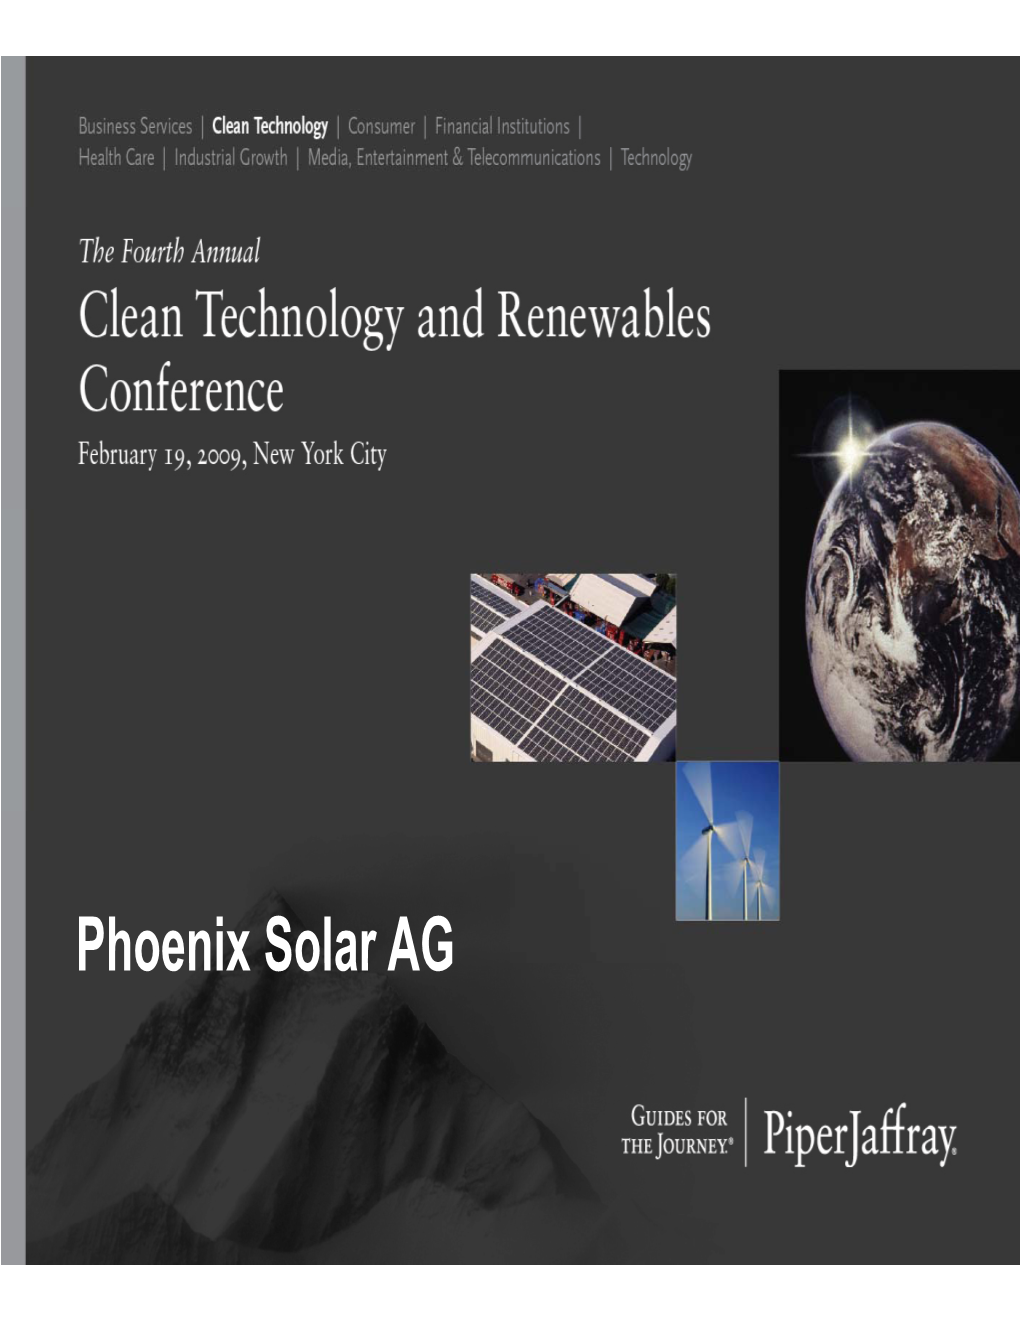 Phoenix Solar AG